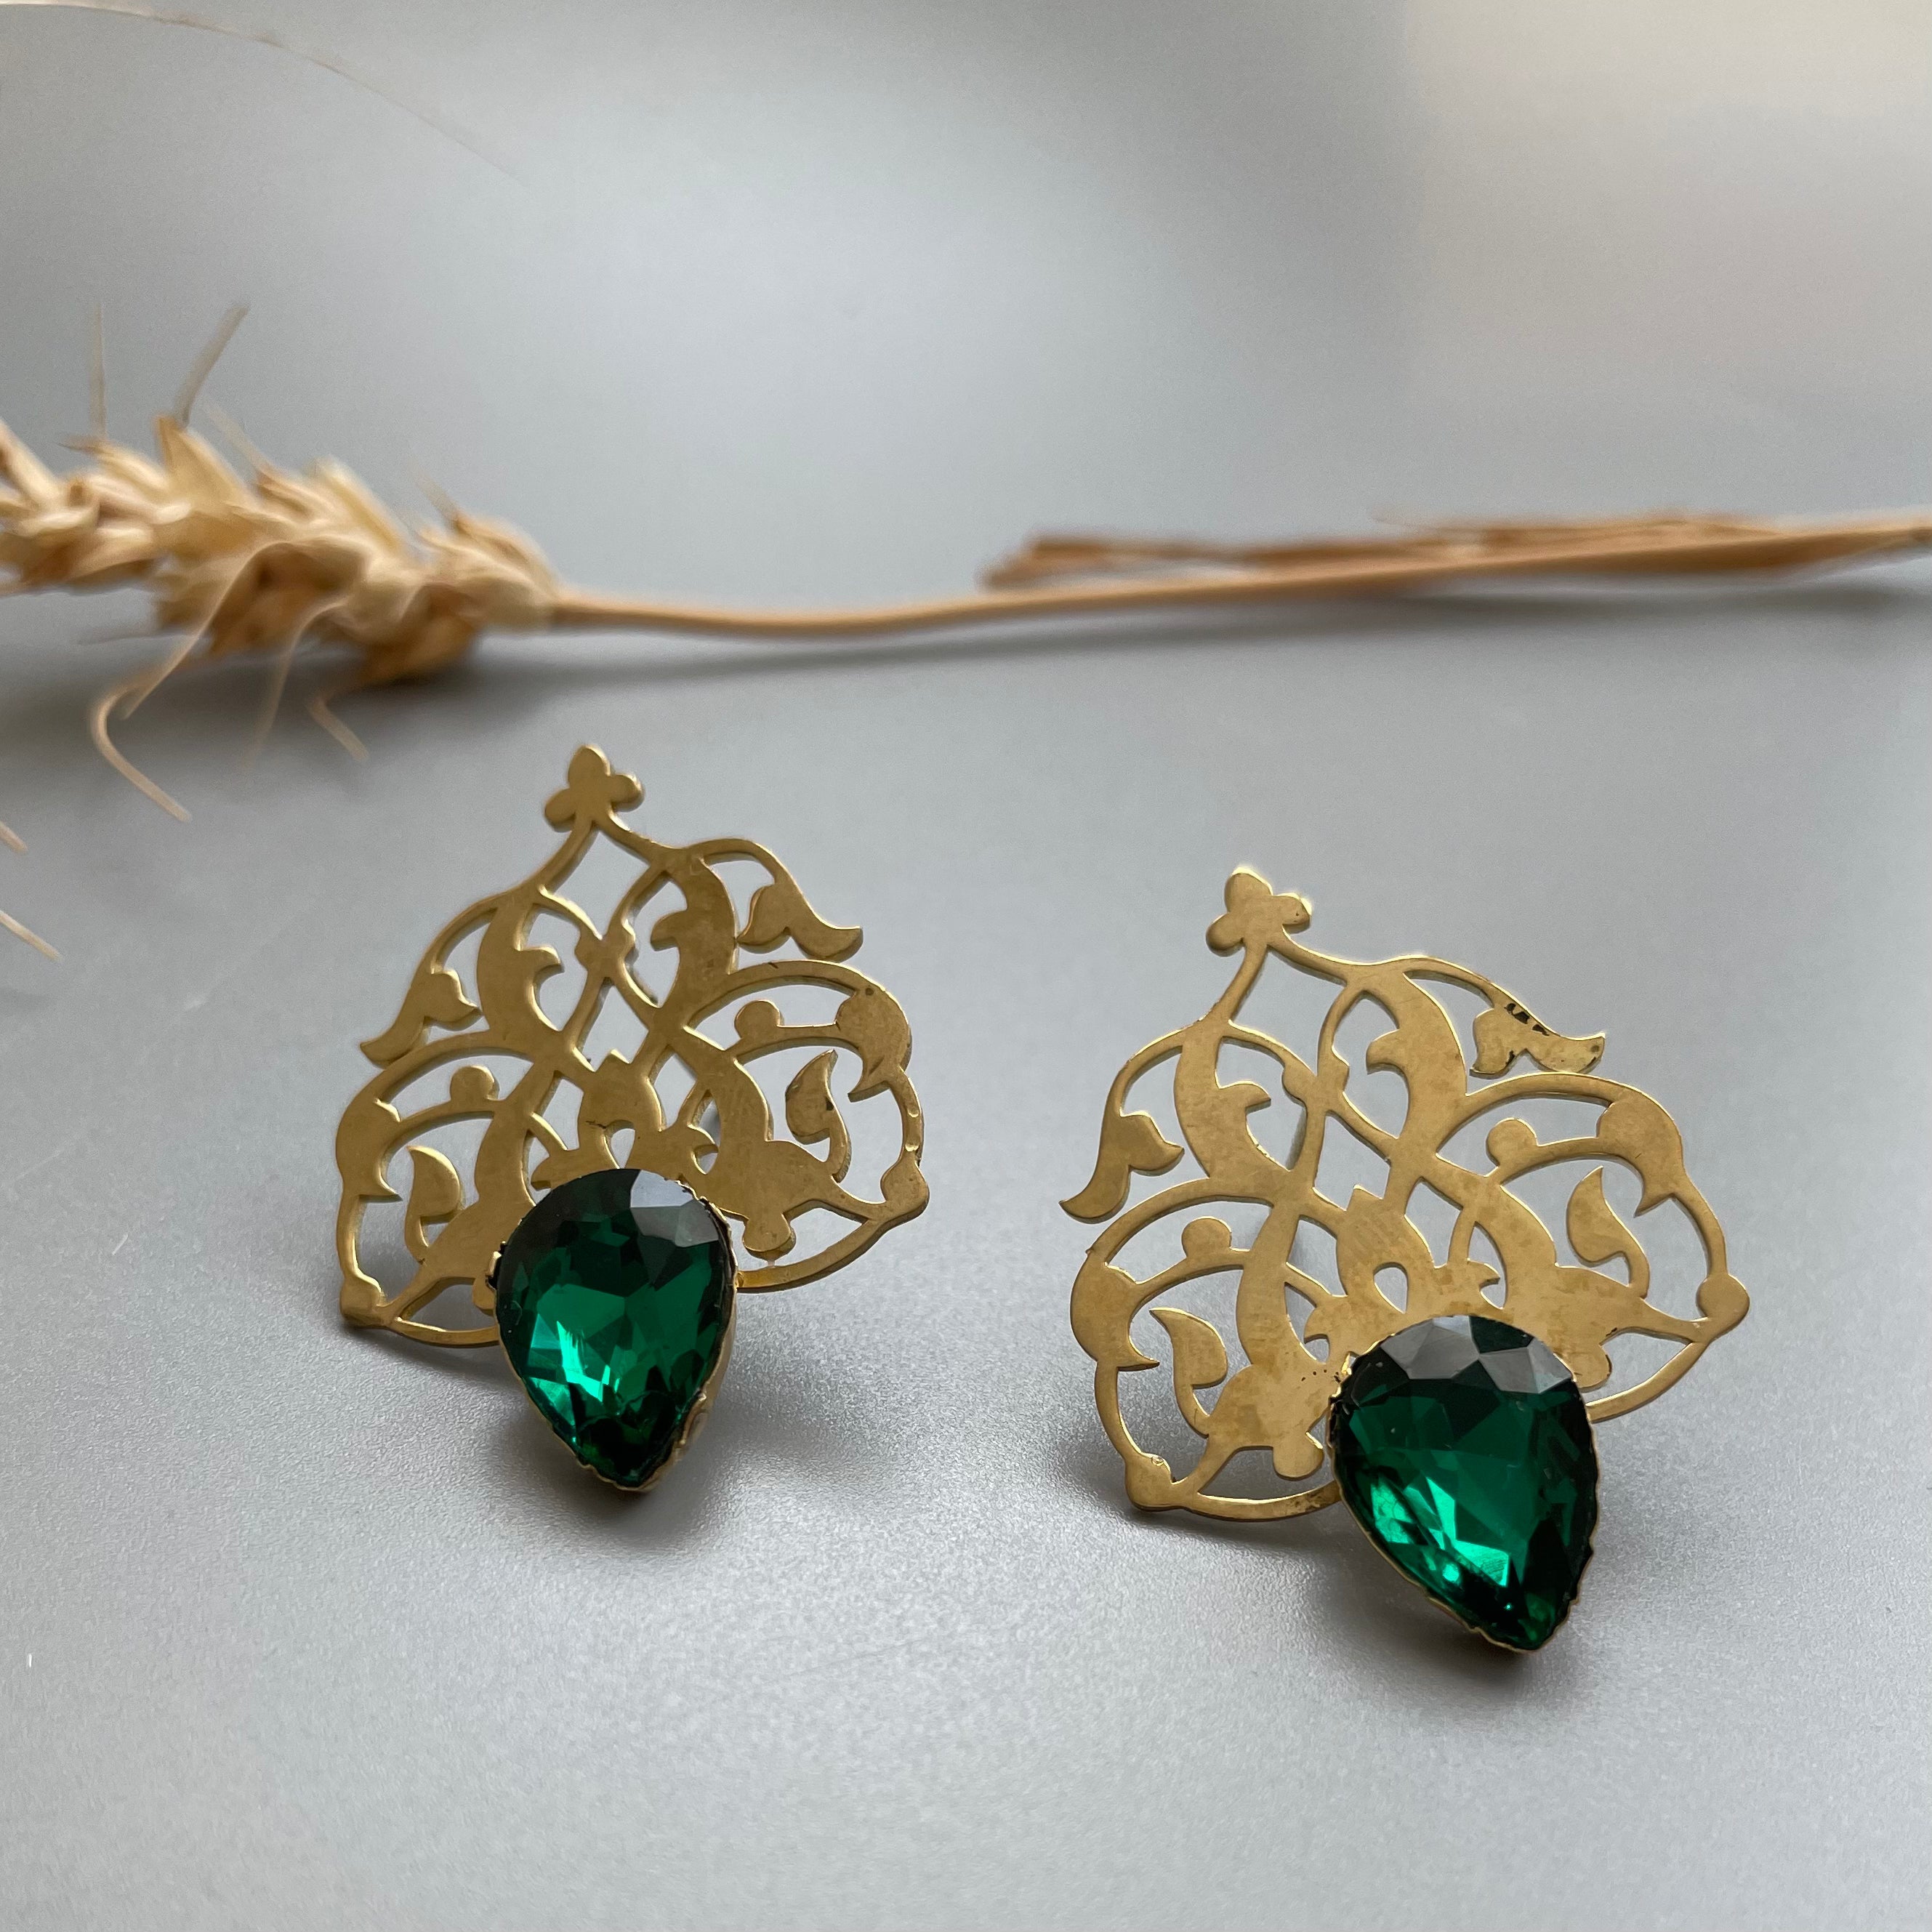 Persian EarringsPersian Brass Earrings with Green Crystal in Eslimi Design-jewellery: Persian Jewelry-AFRA ART GALLERY